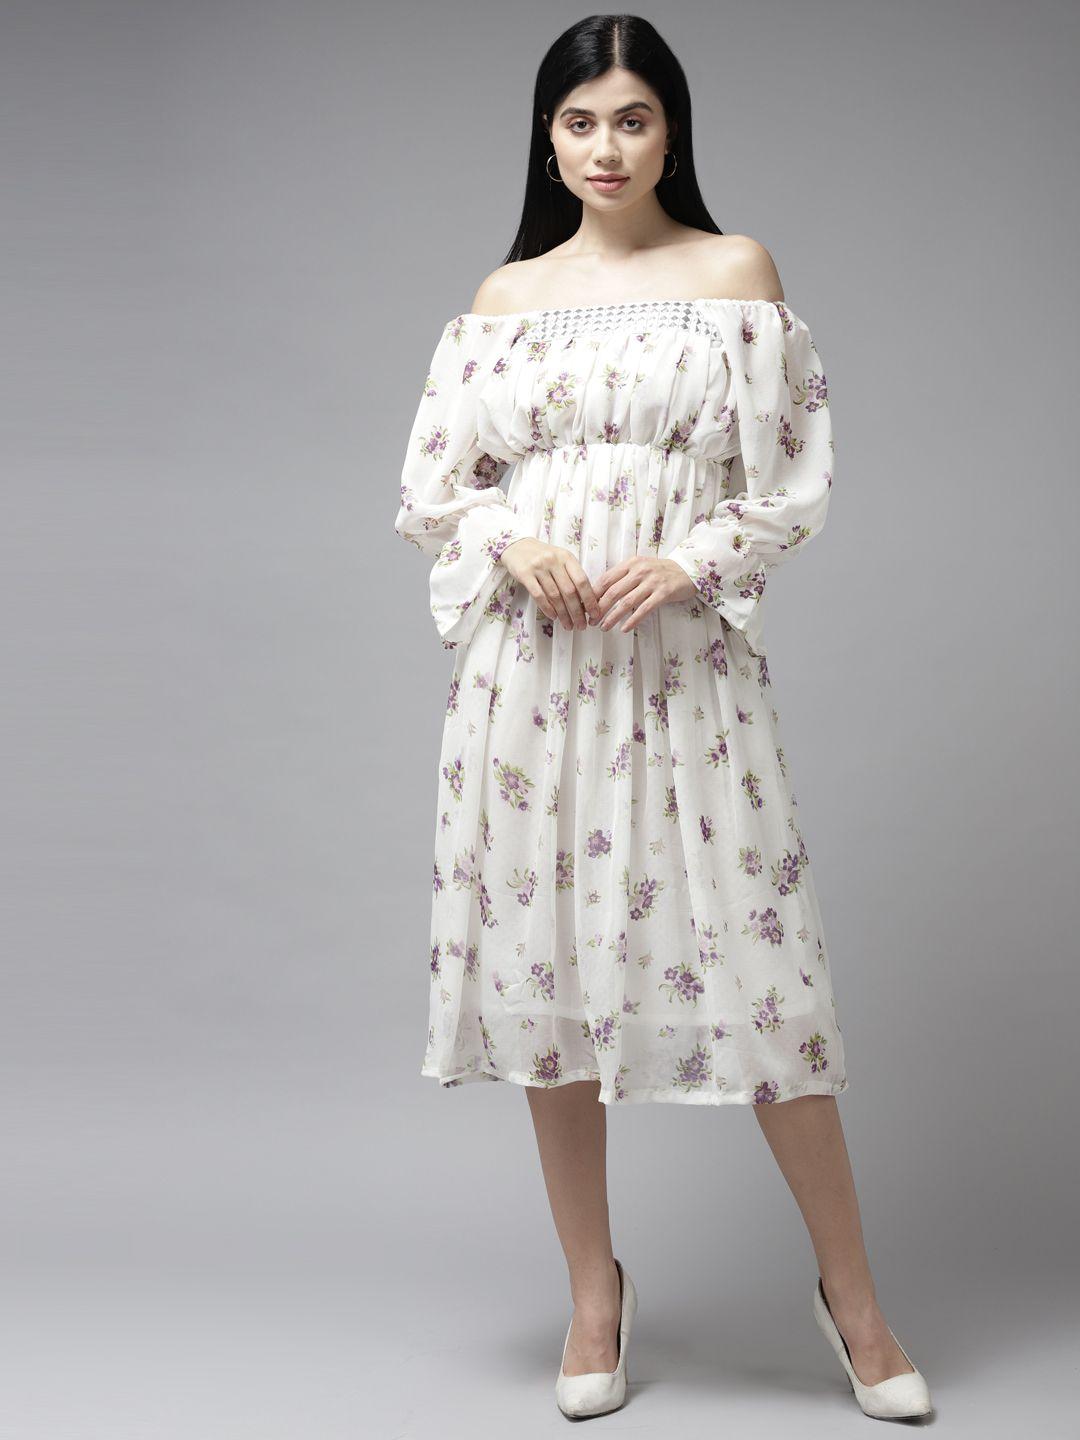 aarika white floral off-shoulder georgette midi dress